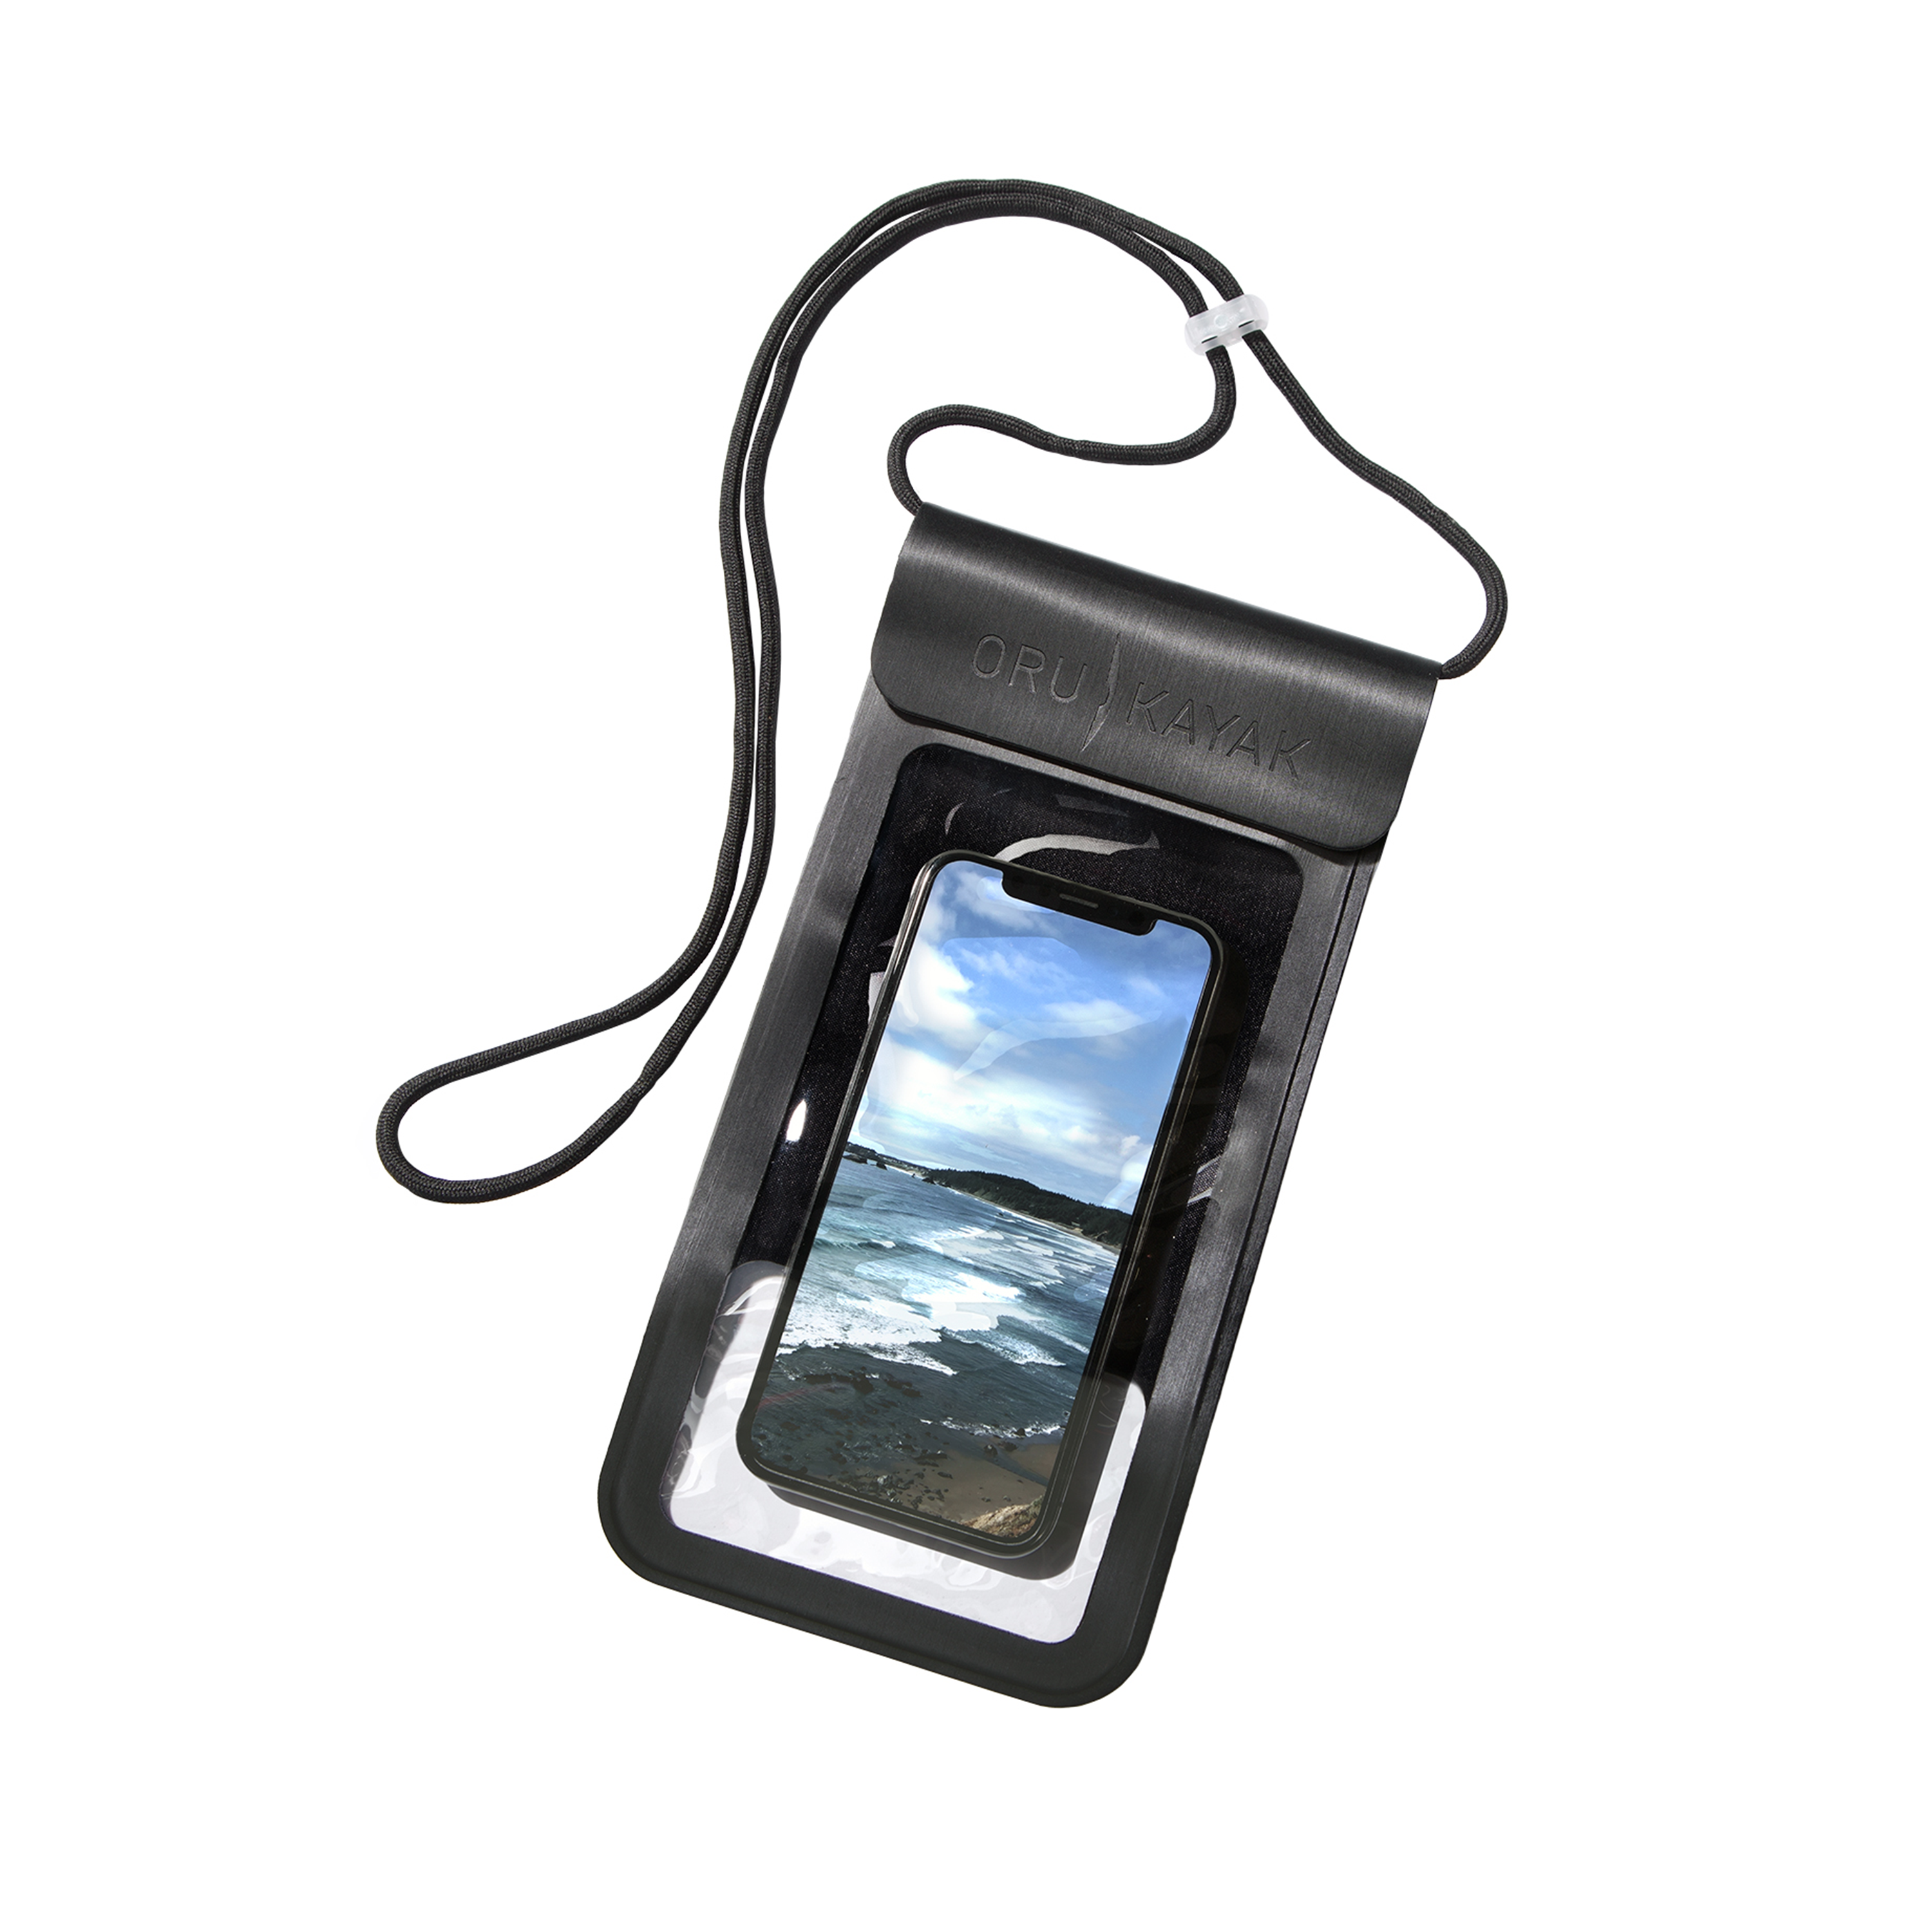 Oru Phone Dry Bag - Oru Kayak